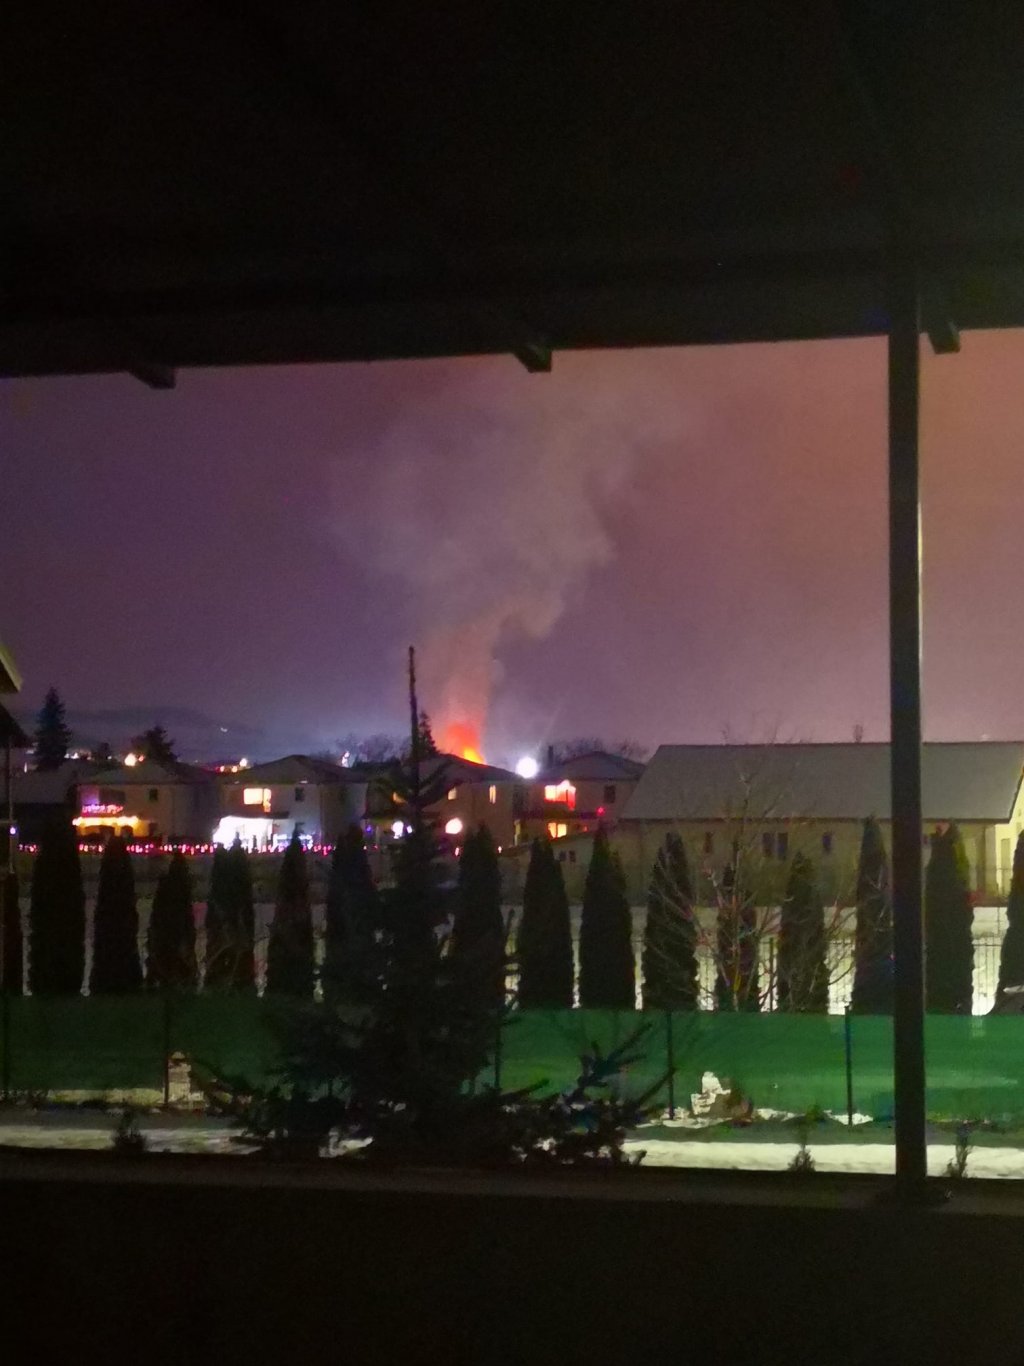 Incendiu pe strada Avram Iancu, în Florești. Au ars acoperișul unei case și o anexă